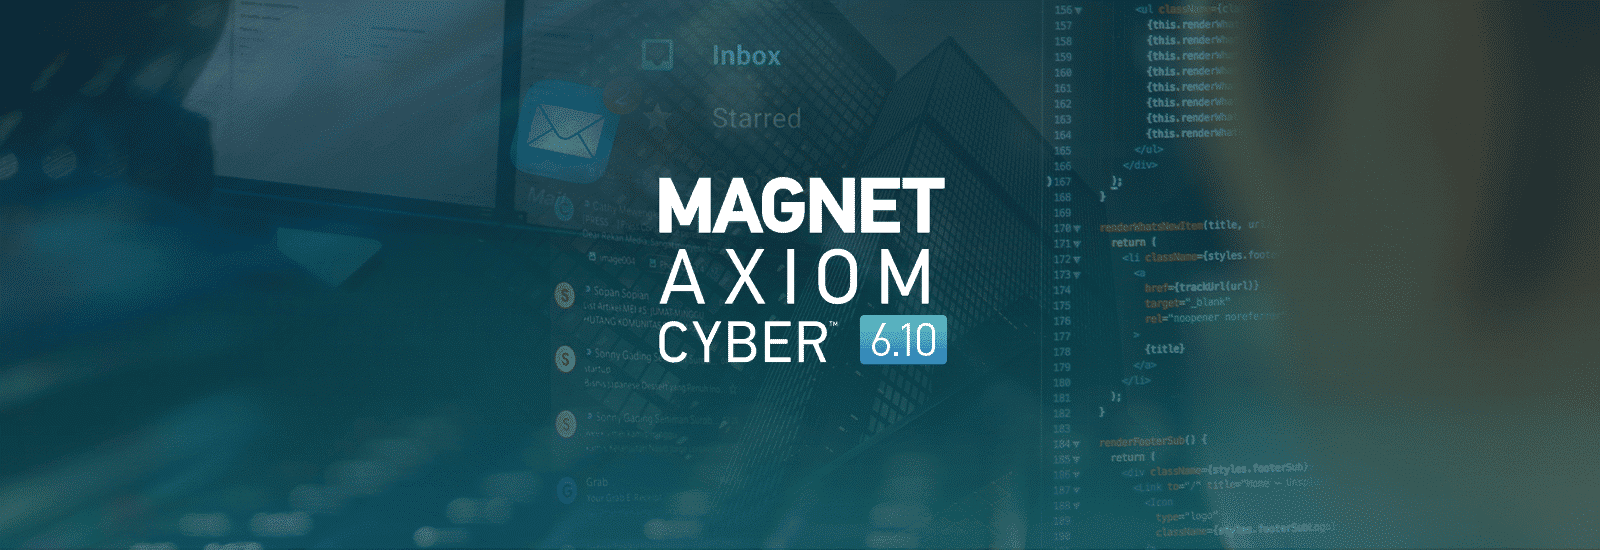 Magnet AXIOM Cyber 6.10